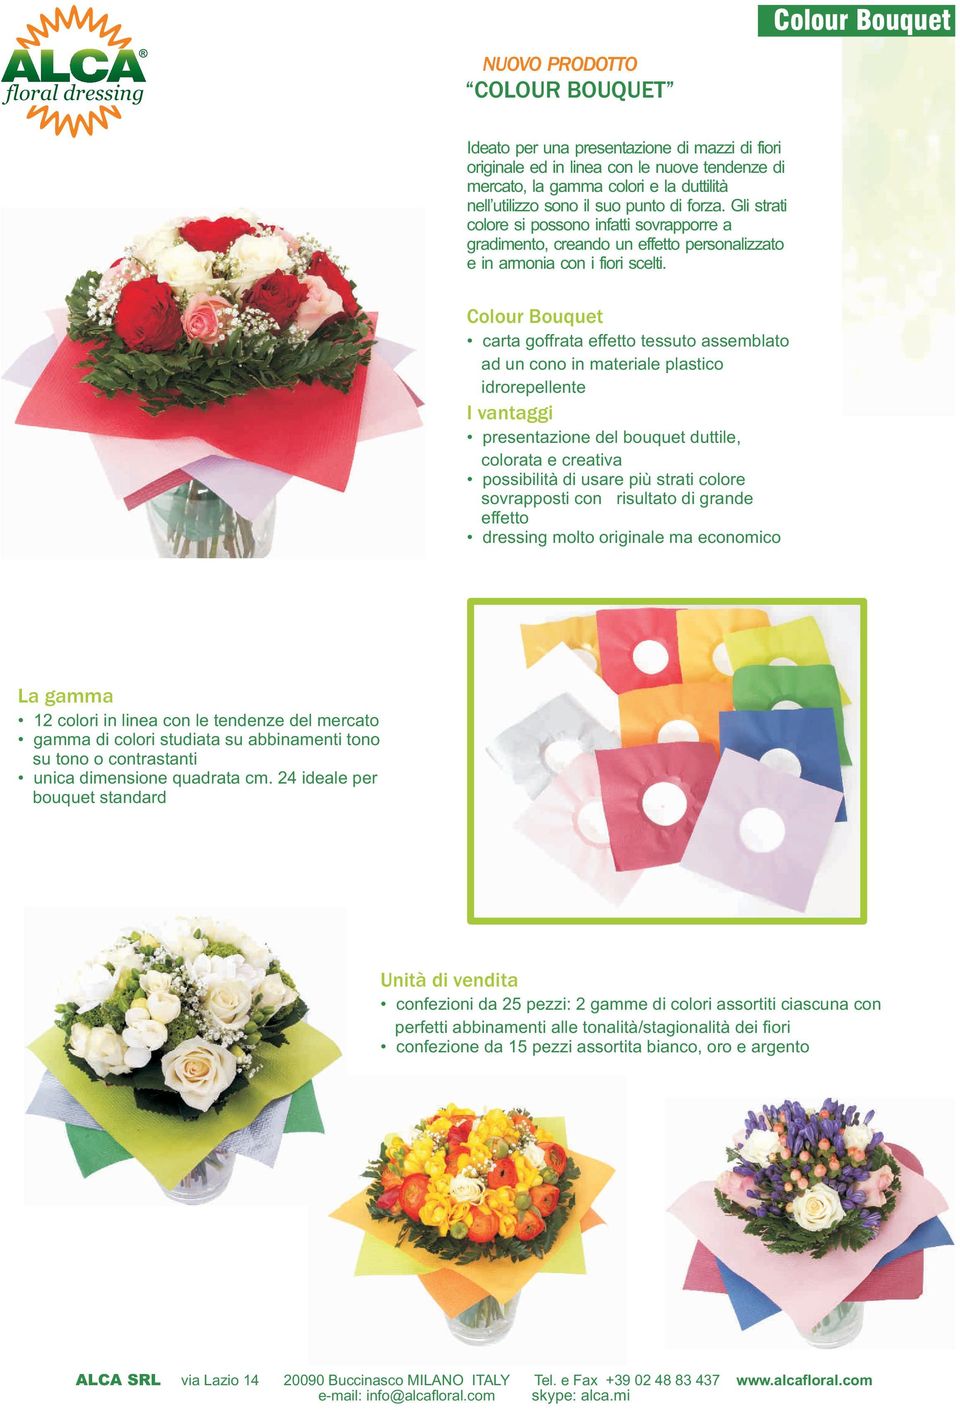 Colour Bouquet carta goffrata effetto tessuto assemblato ad un cono in materiale plastico idrorepellente I vantaggi presentazione del bouquet duttile, colorata e creativa possibilità di usare più